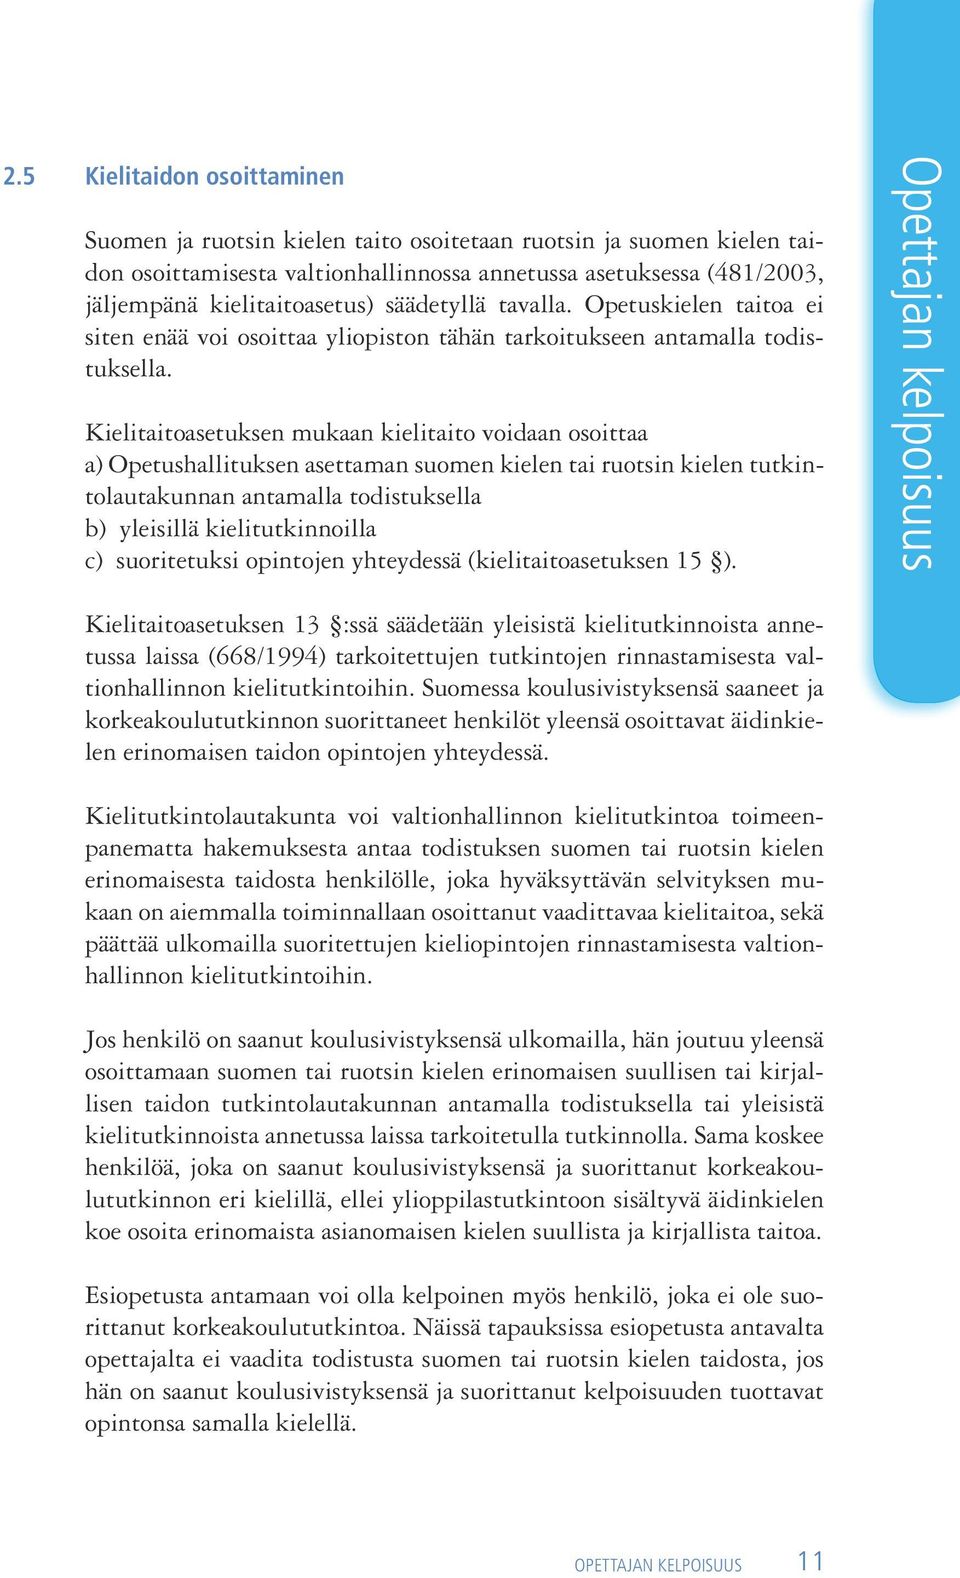 Kielitaitoasetuksen mukaan kielitaito voidaan osoittaa a) Opetushallituksen asettaman suomen kielen tai ruotsin kielen tutkintolautakunnan antamalla todistuksella b) yleisillä kielitutkinnoilla c)